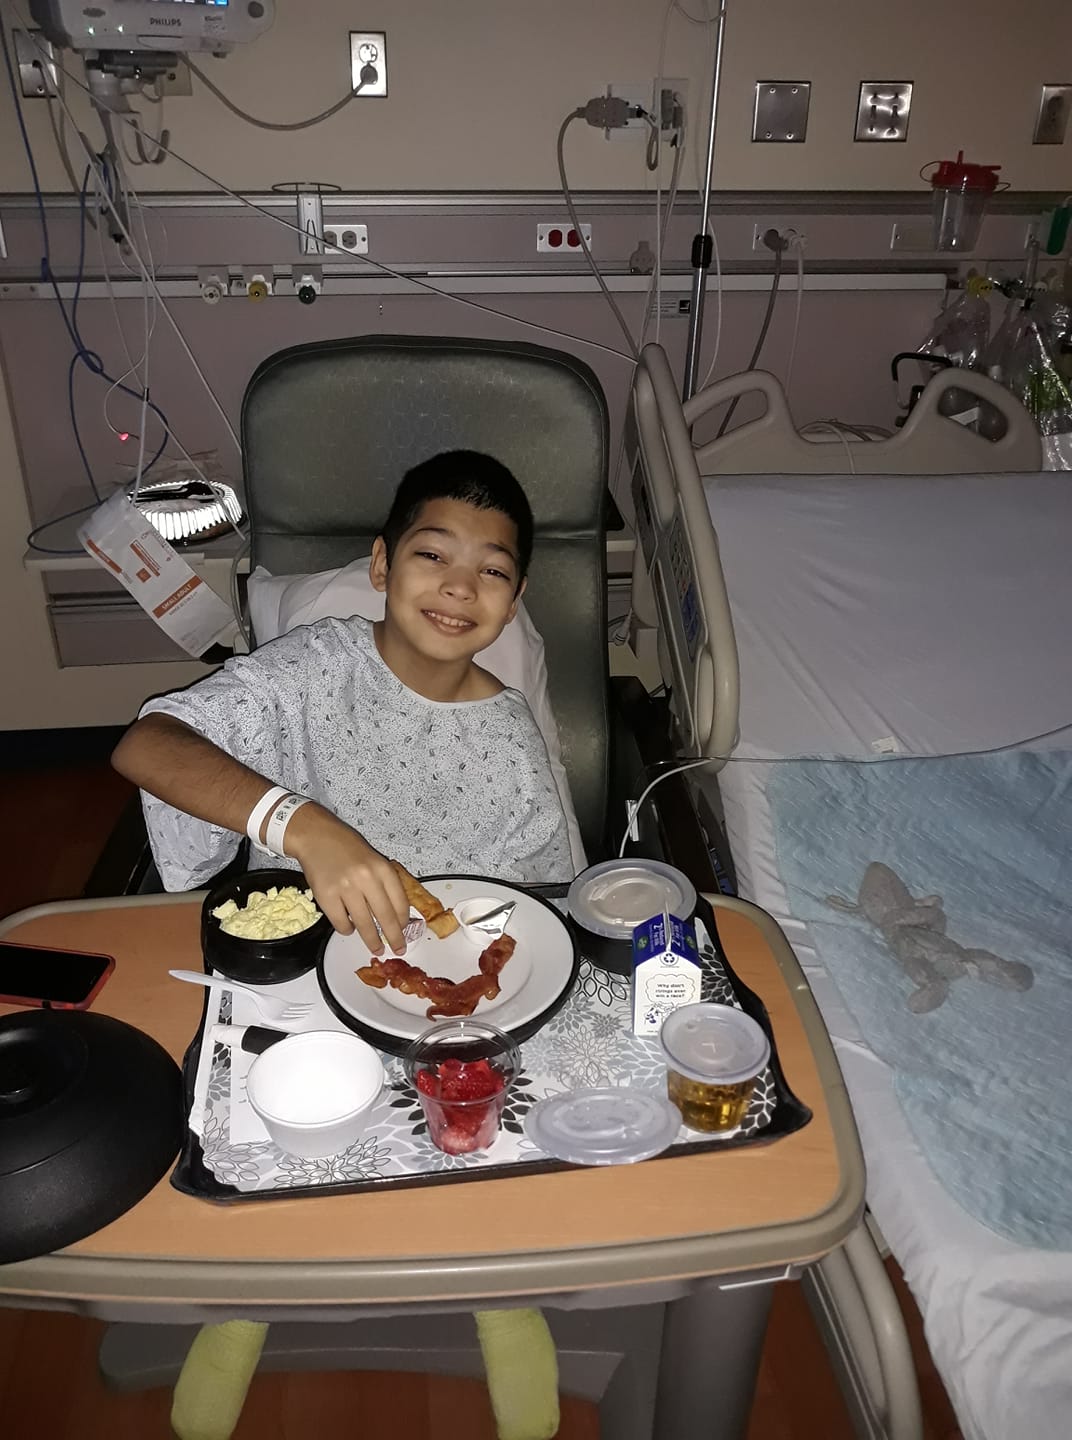 Isaiah at the hospital soon after his diagnosis